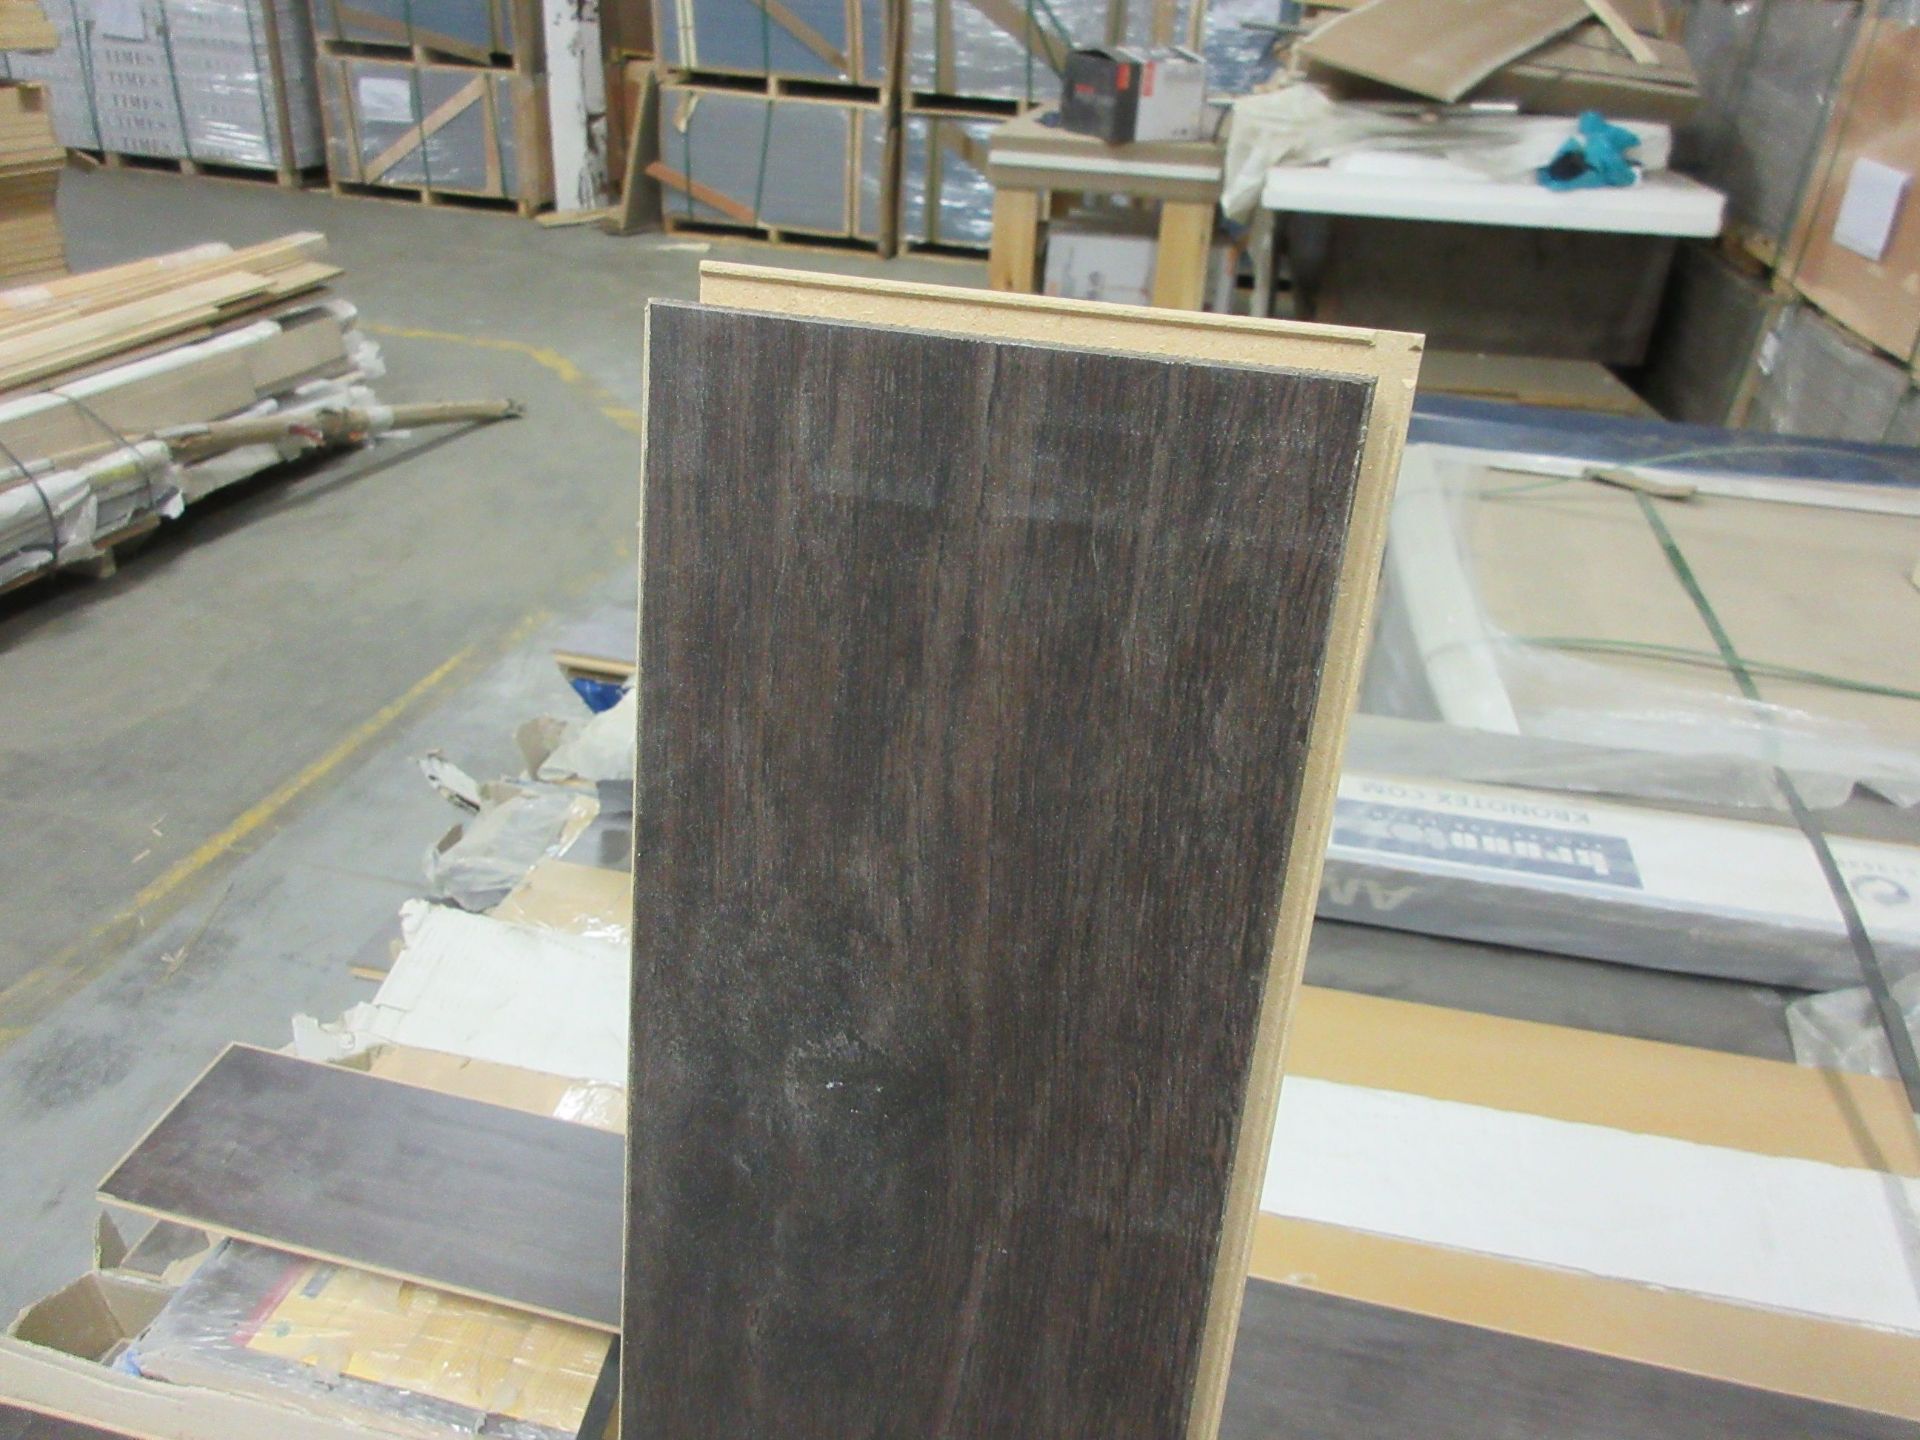 Laminate flooring (surabaya oak) 7 pieces/box, 11.75 sq. ft per box (40 boxes) - Image 2 of 5